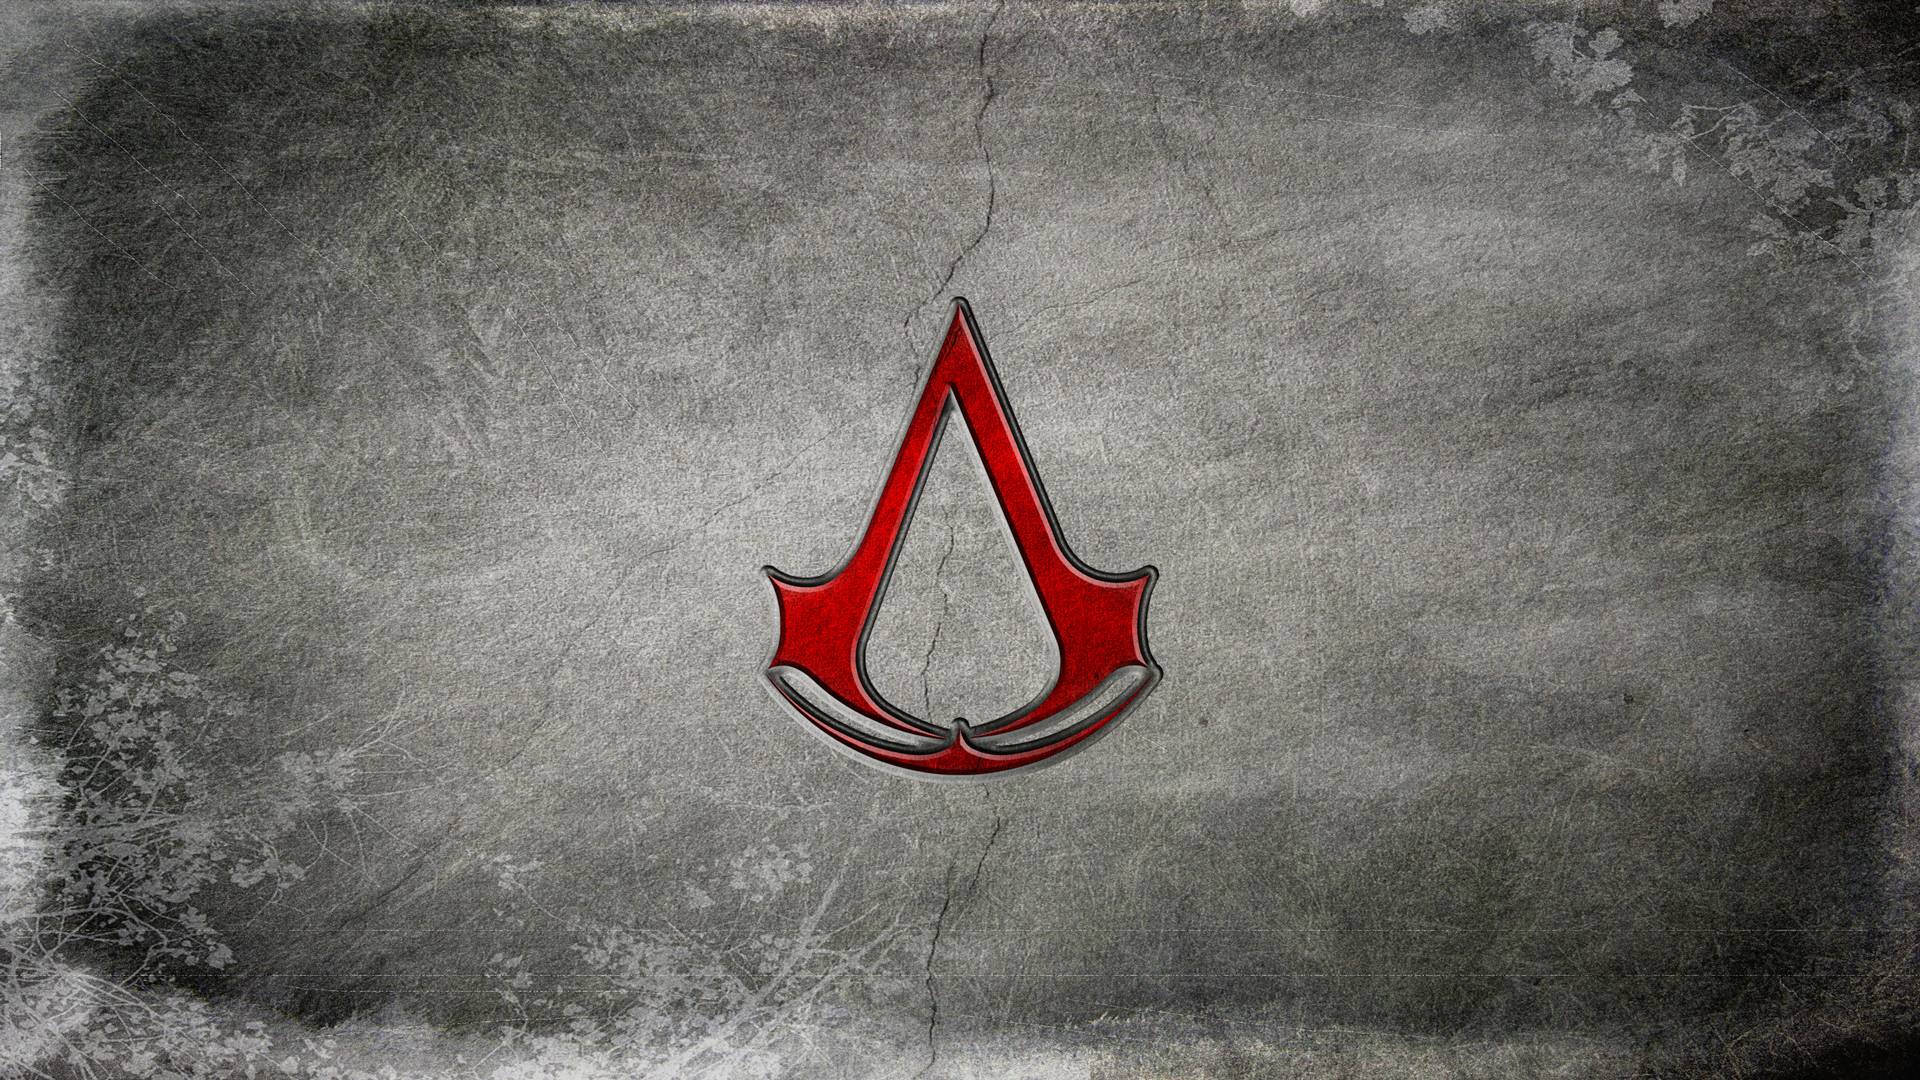 Assassin&;s Creed Emblem